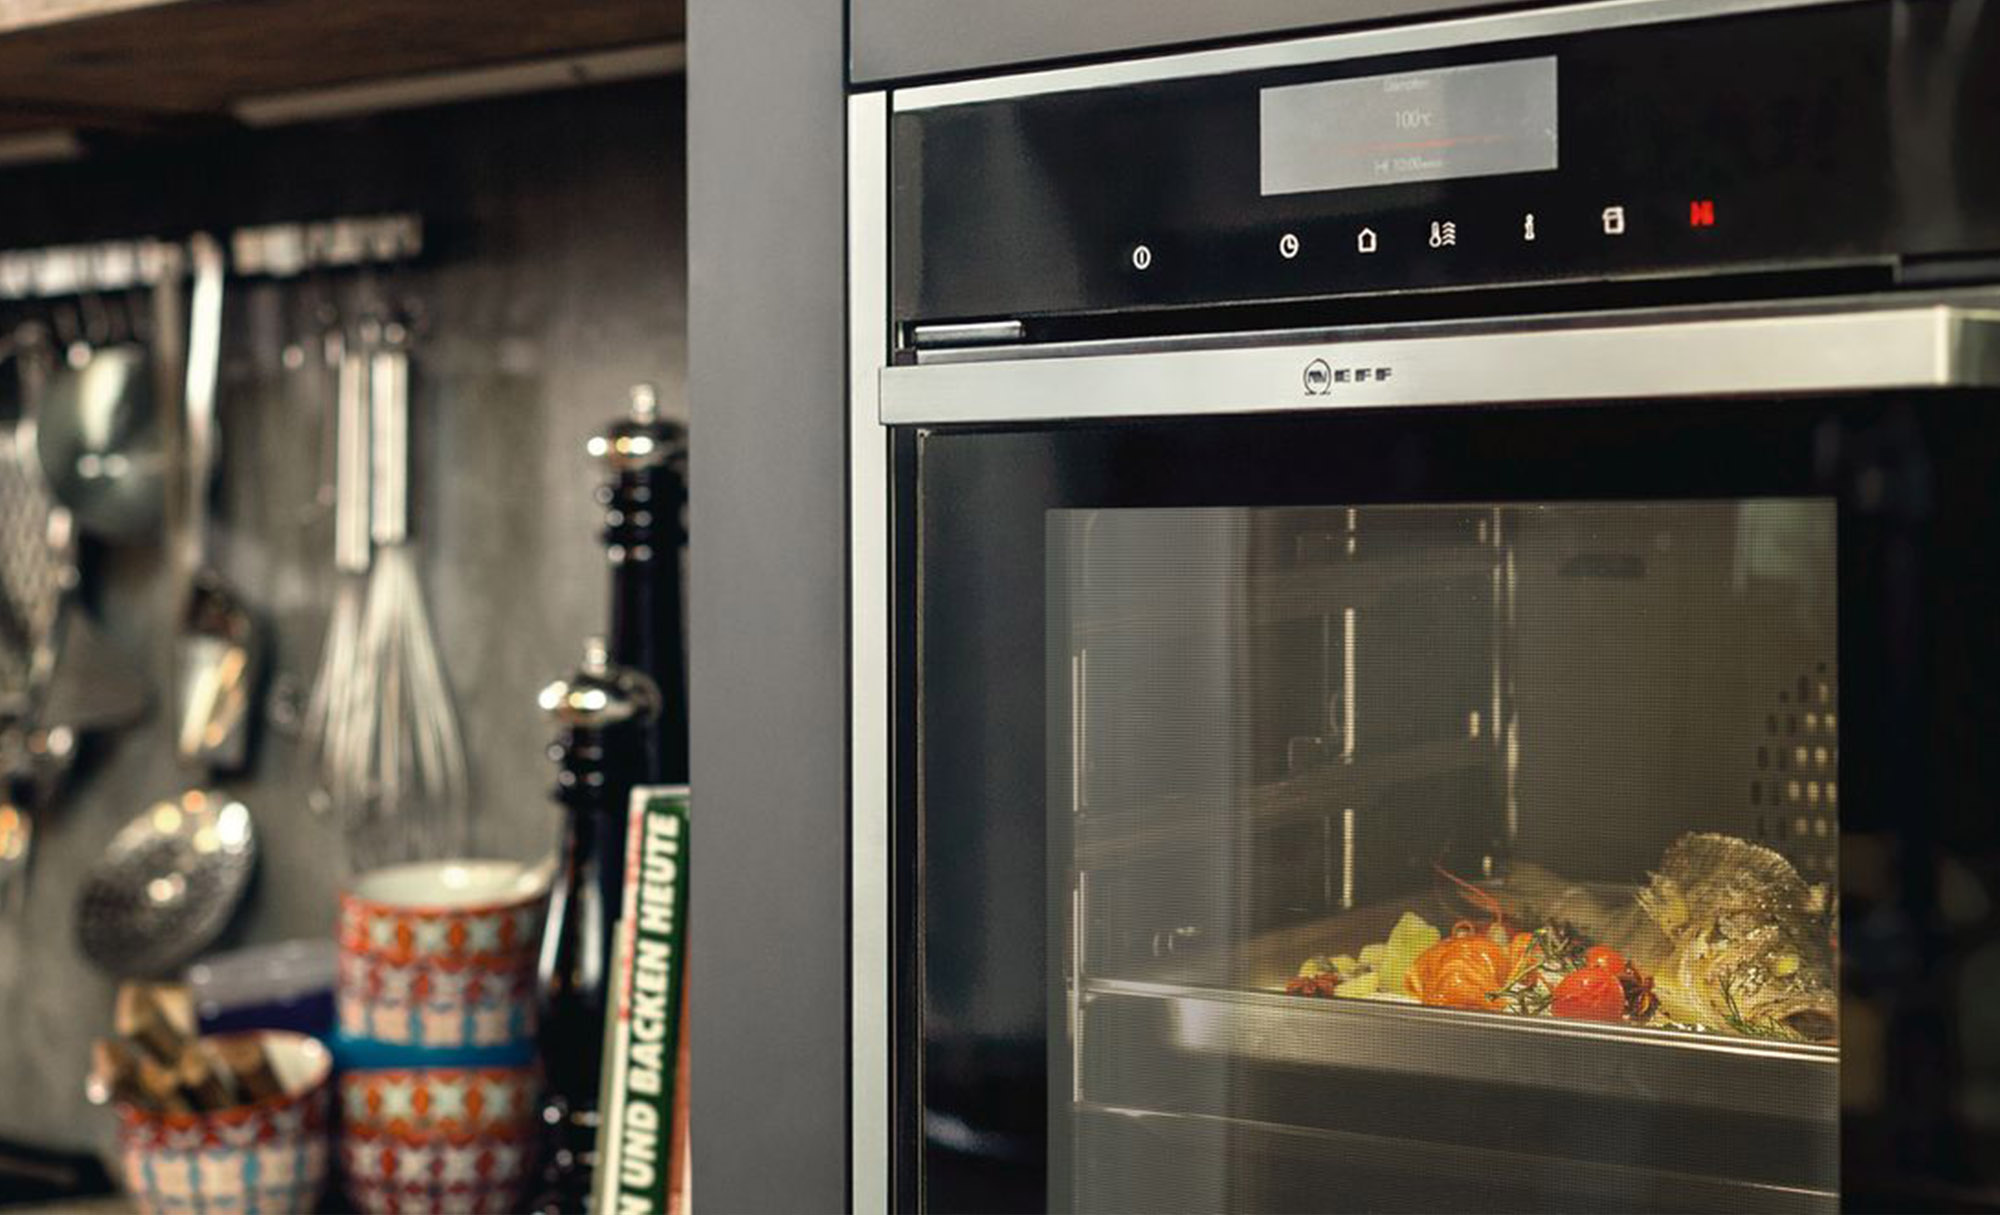 Sdavies sliders kitchen appliances neff main